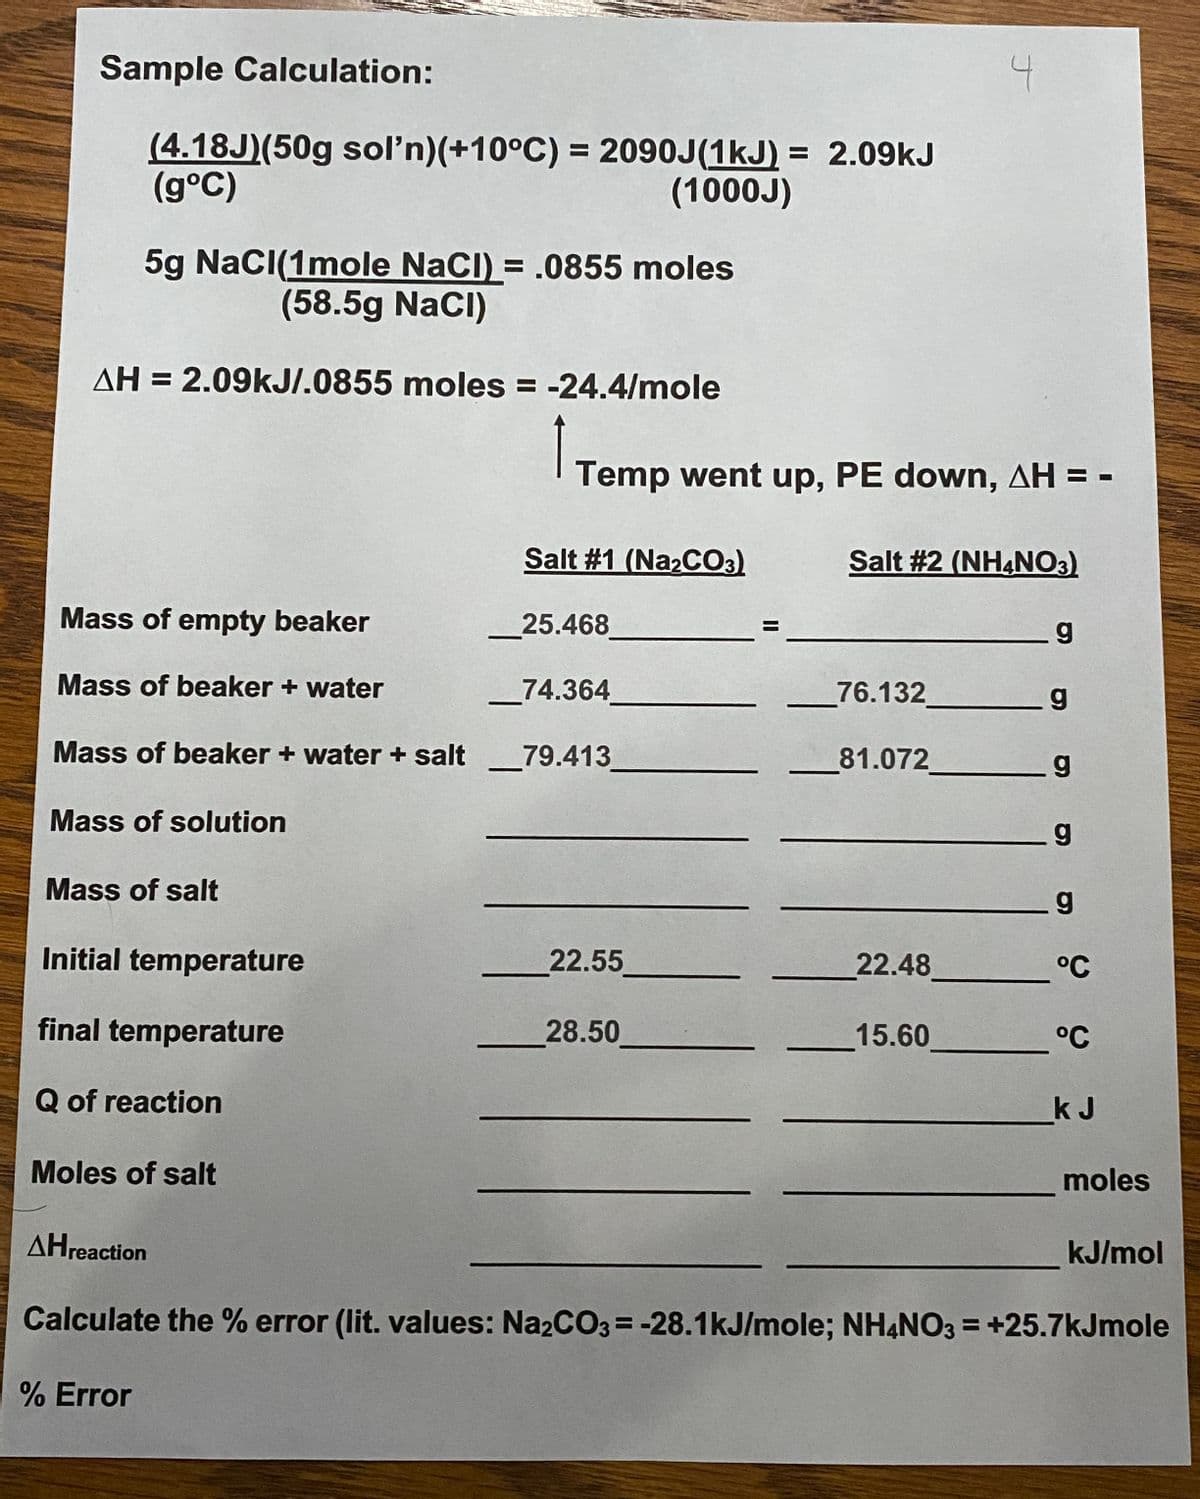 Sample Calculation:
(4.18J)(50g sol'n)(+10°C) = 2090J(1kJ) = 2.09kJ
(g°C)
(1000J)
5g NacI(1mole NaCI) = .0855 moles
(58.5g NaCI)
AH = 2.09KJI.0855 moles = -24.4/mole
Temp went up, PE down, AH = -
Salt #1 (Na2CO3)
Salt #2 (NH4NO3)
Mass of empty beaker
25.468
Mass of beaker + water
_74.364
76.132
Mass of beaker + water + salt
79.413
81.072
Mass of solution
Mass of salt
Initial temperature
22.55
22.48
°C
final temperature
28.50
15.60
°C
Q of reaction
_kJ
Moles of salt
moles
AHreaction
kJ/mol
Calculate the % error (lit. values: Na2CO3= -28.1kJ/mole; NHẠNO3 = +25.7kJmole
% Error
